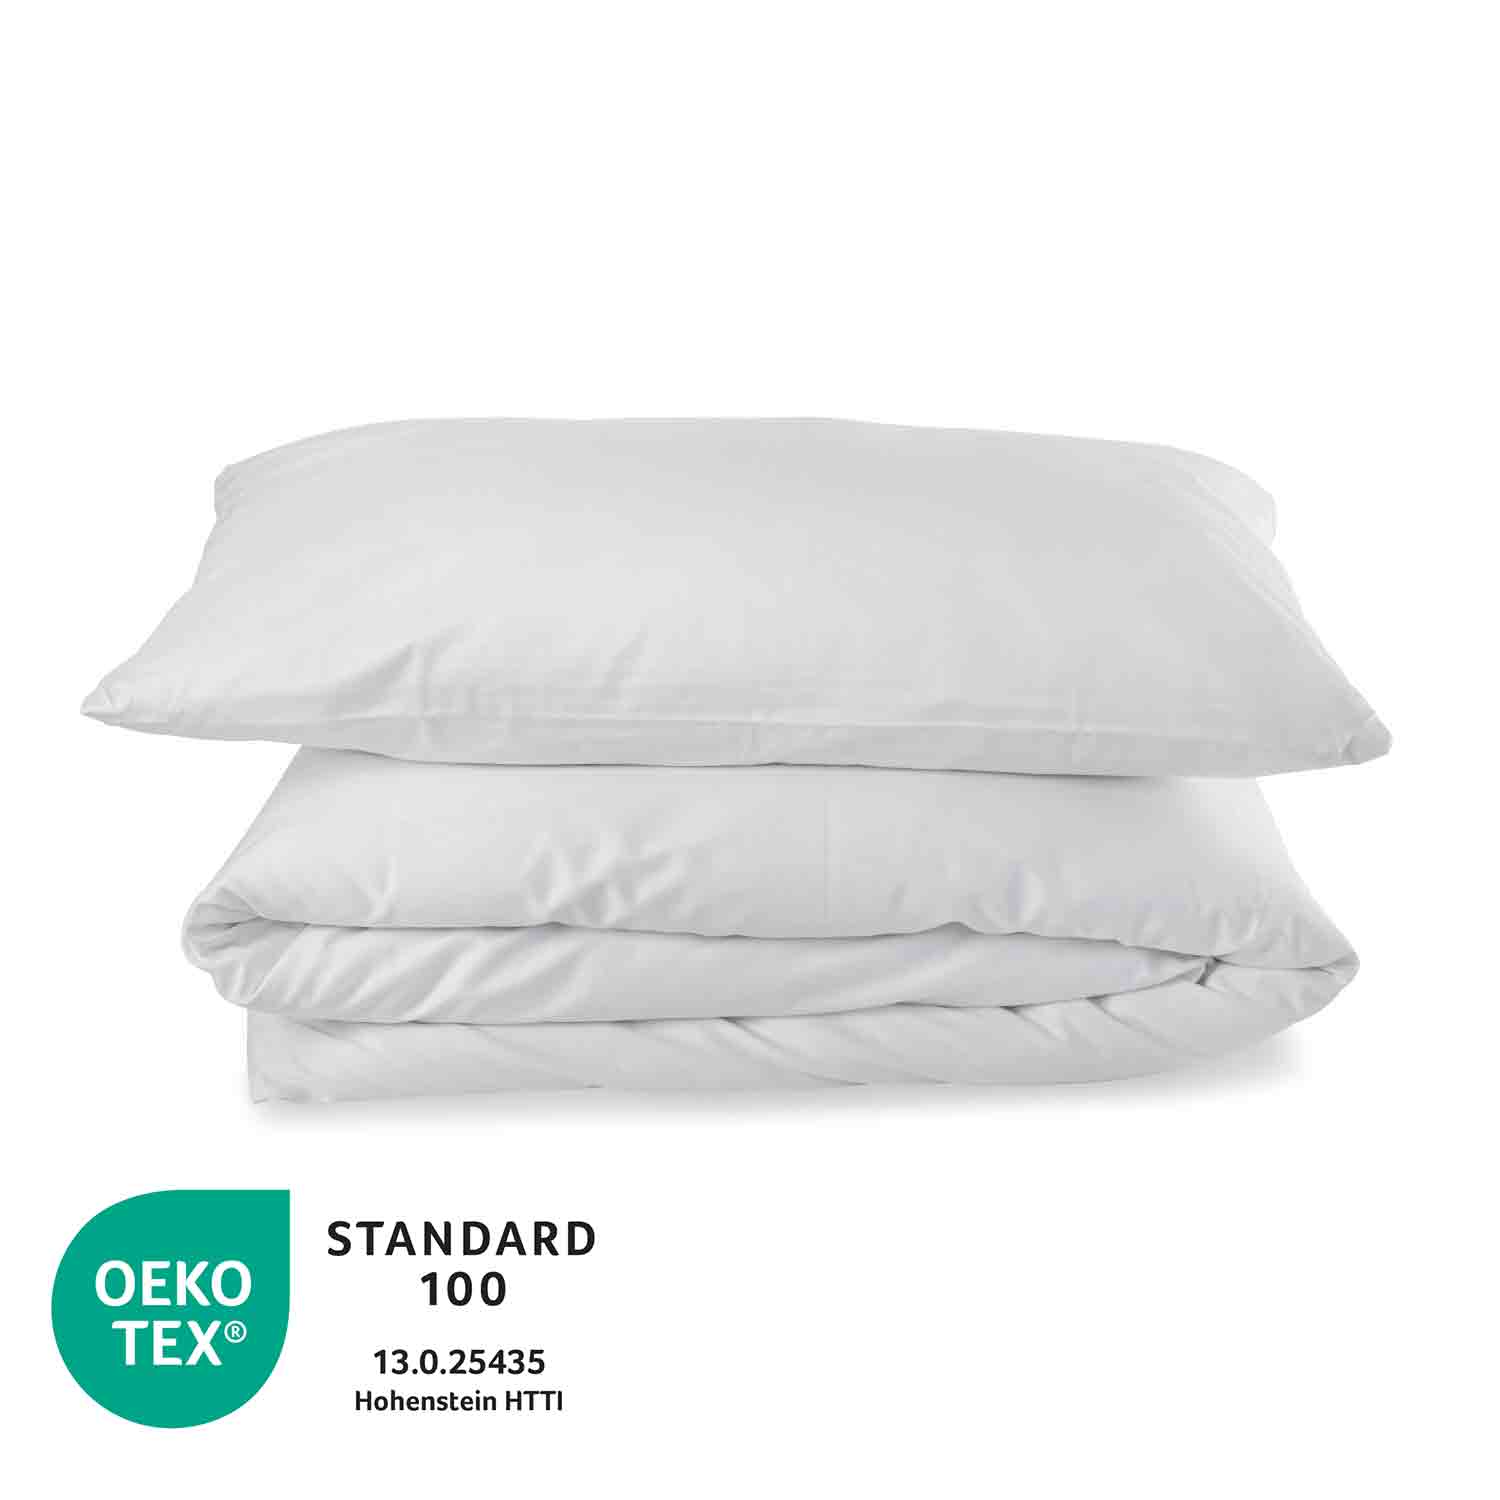 Preiswerte Bettwäsche aus 100% Baumwolle, Leicht-Linon glatt, weiss Kissenbezug 80/80